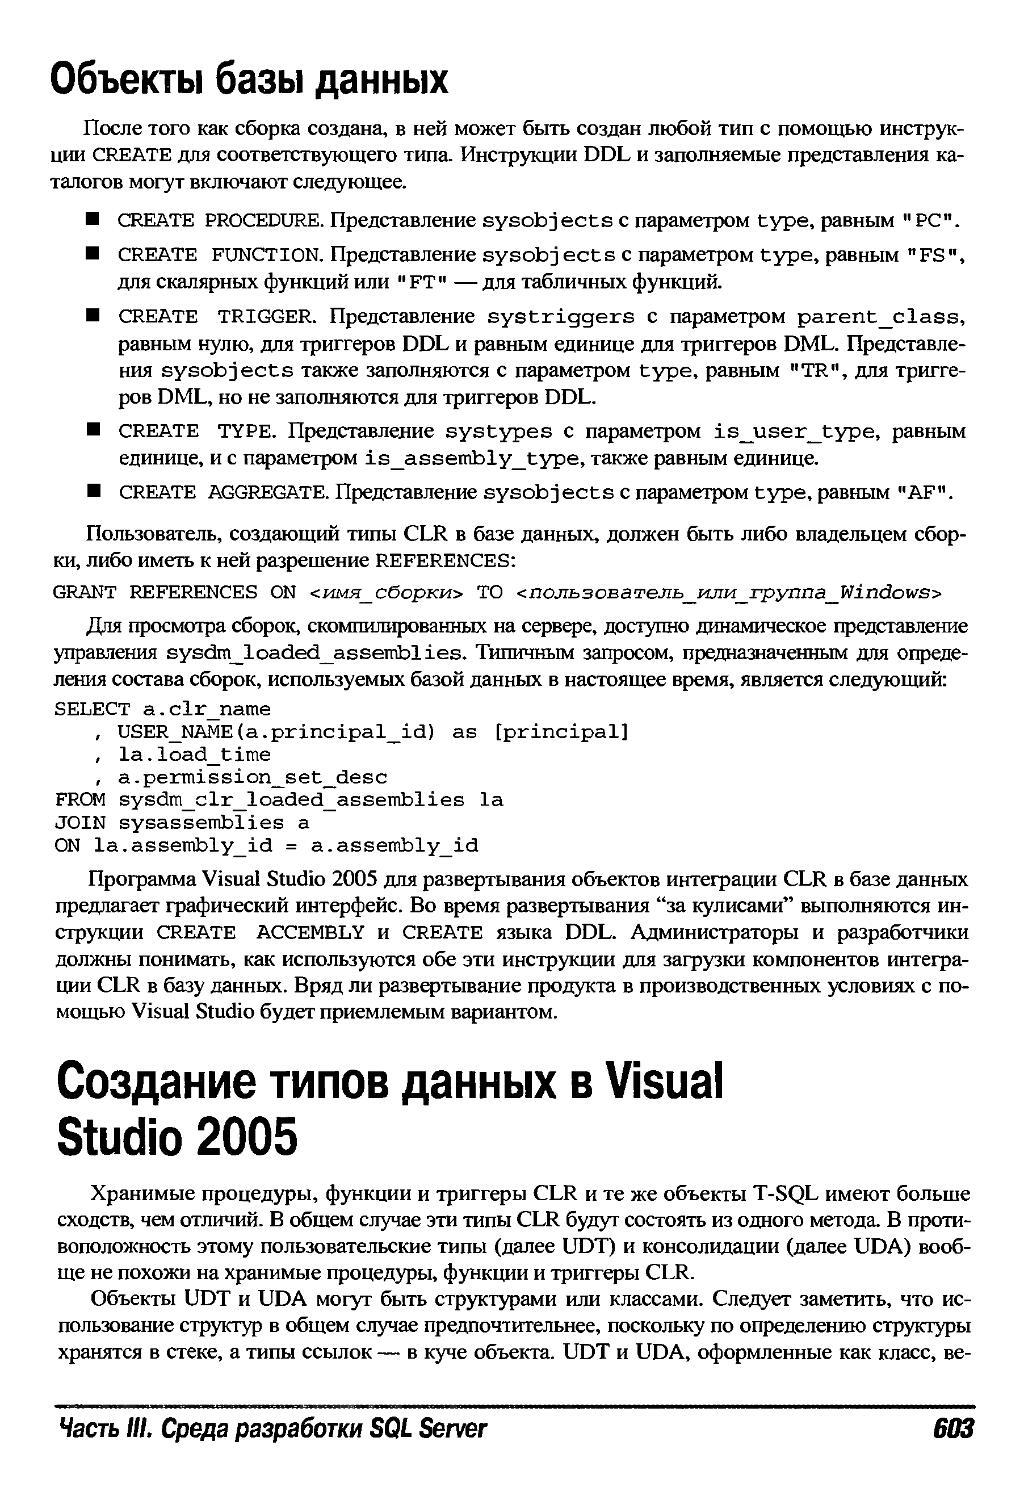 Создание типов данных в Visual Studio 2005